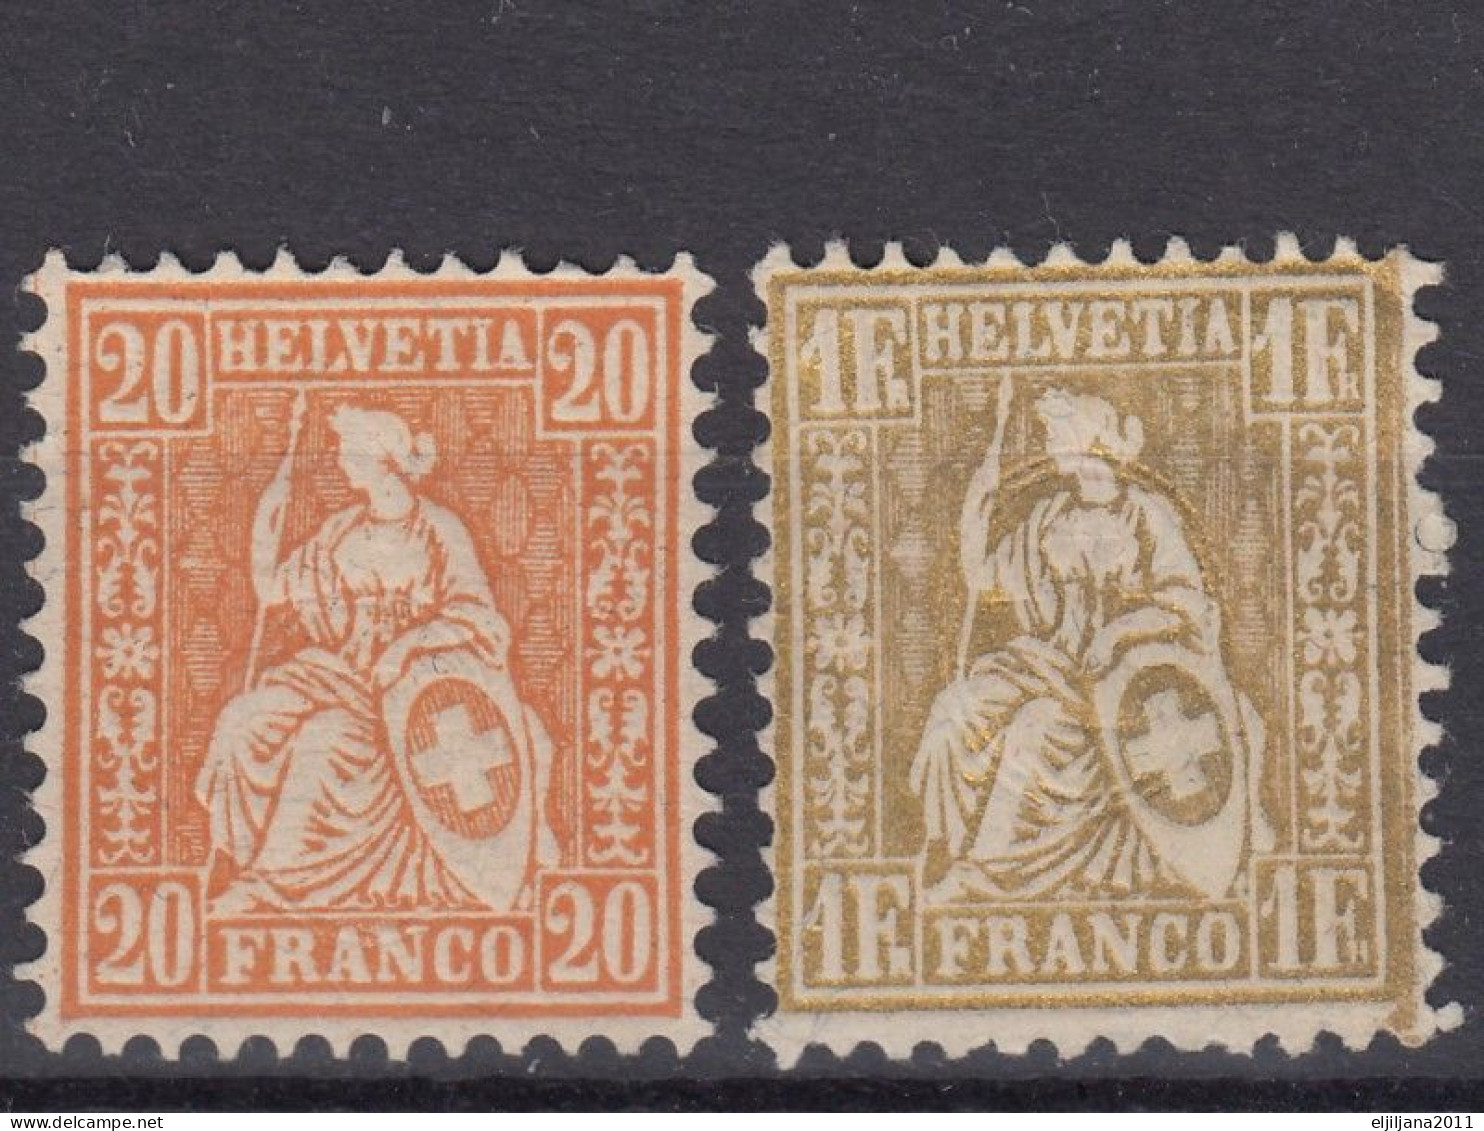 ⁕ Switzerland - SVIZZERA - SUISSE 1862 - 1881 ⁕ SEATED HELVETIA 20 C. & 1 Fr. Franco ⁕ 2v Unused - No Gum - Nuovi